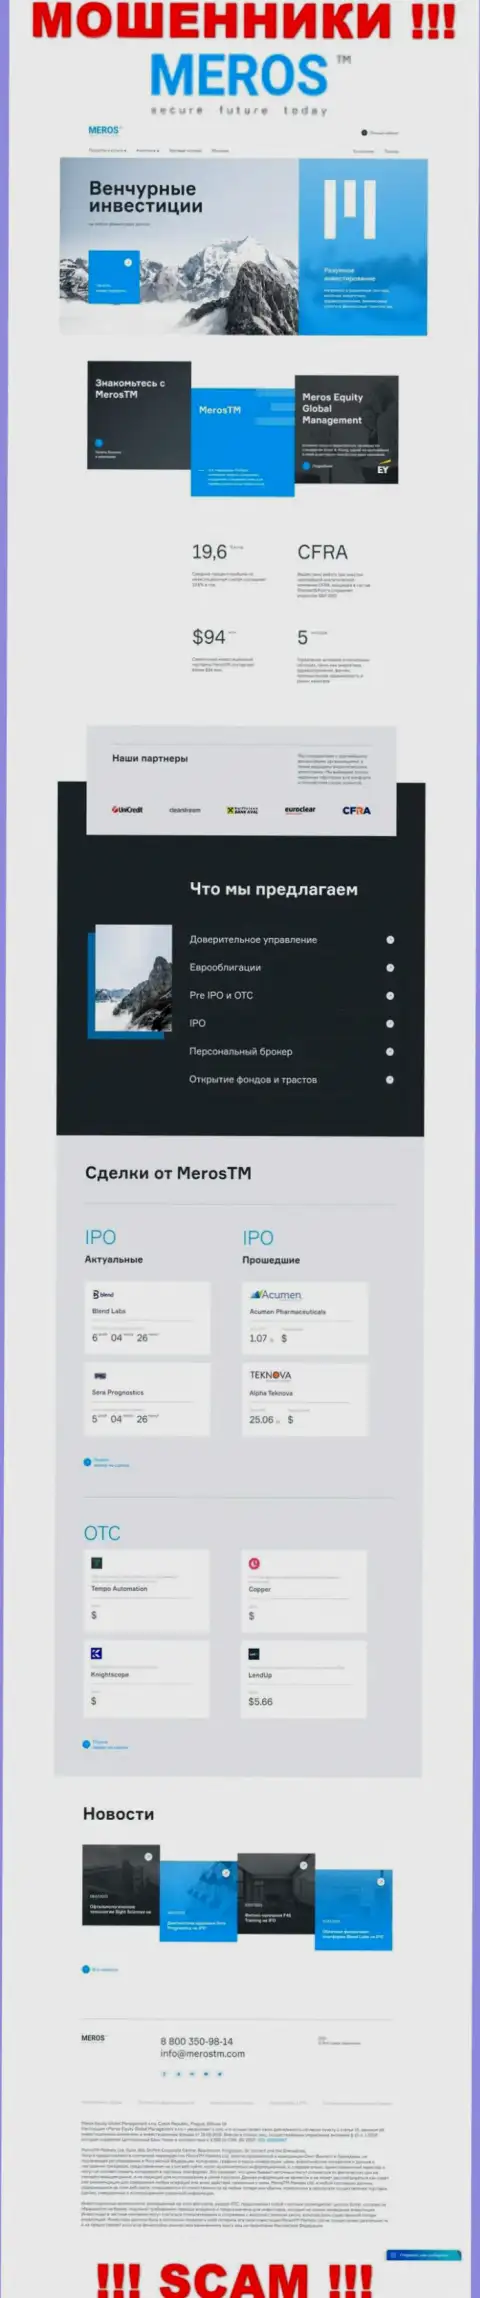 Обзор официального онлайн-ресурса махинаторов MerosMT Markets LLC